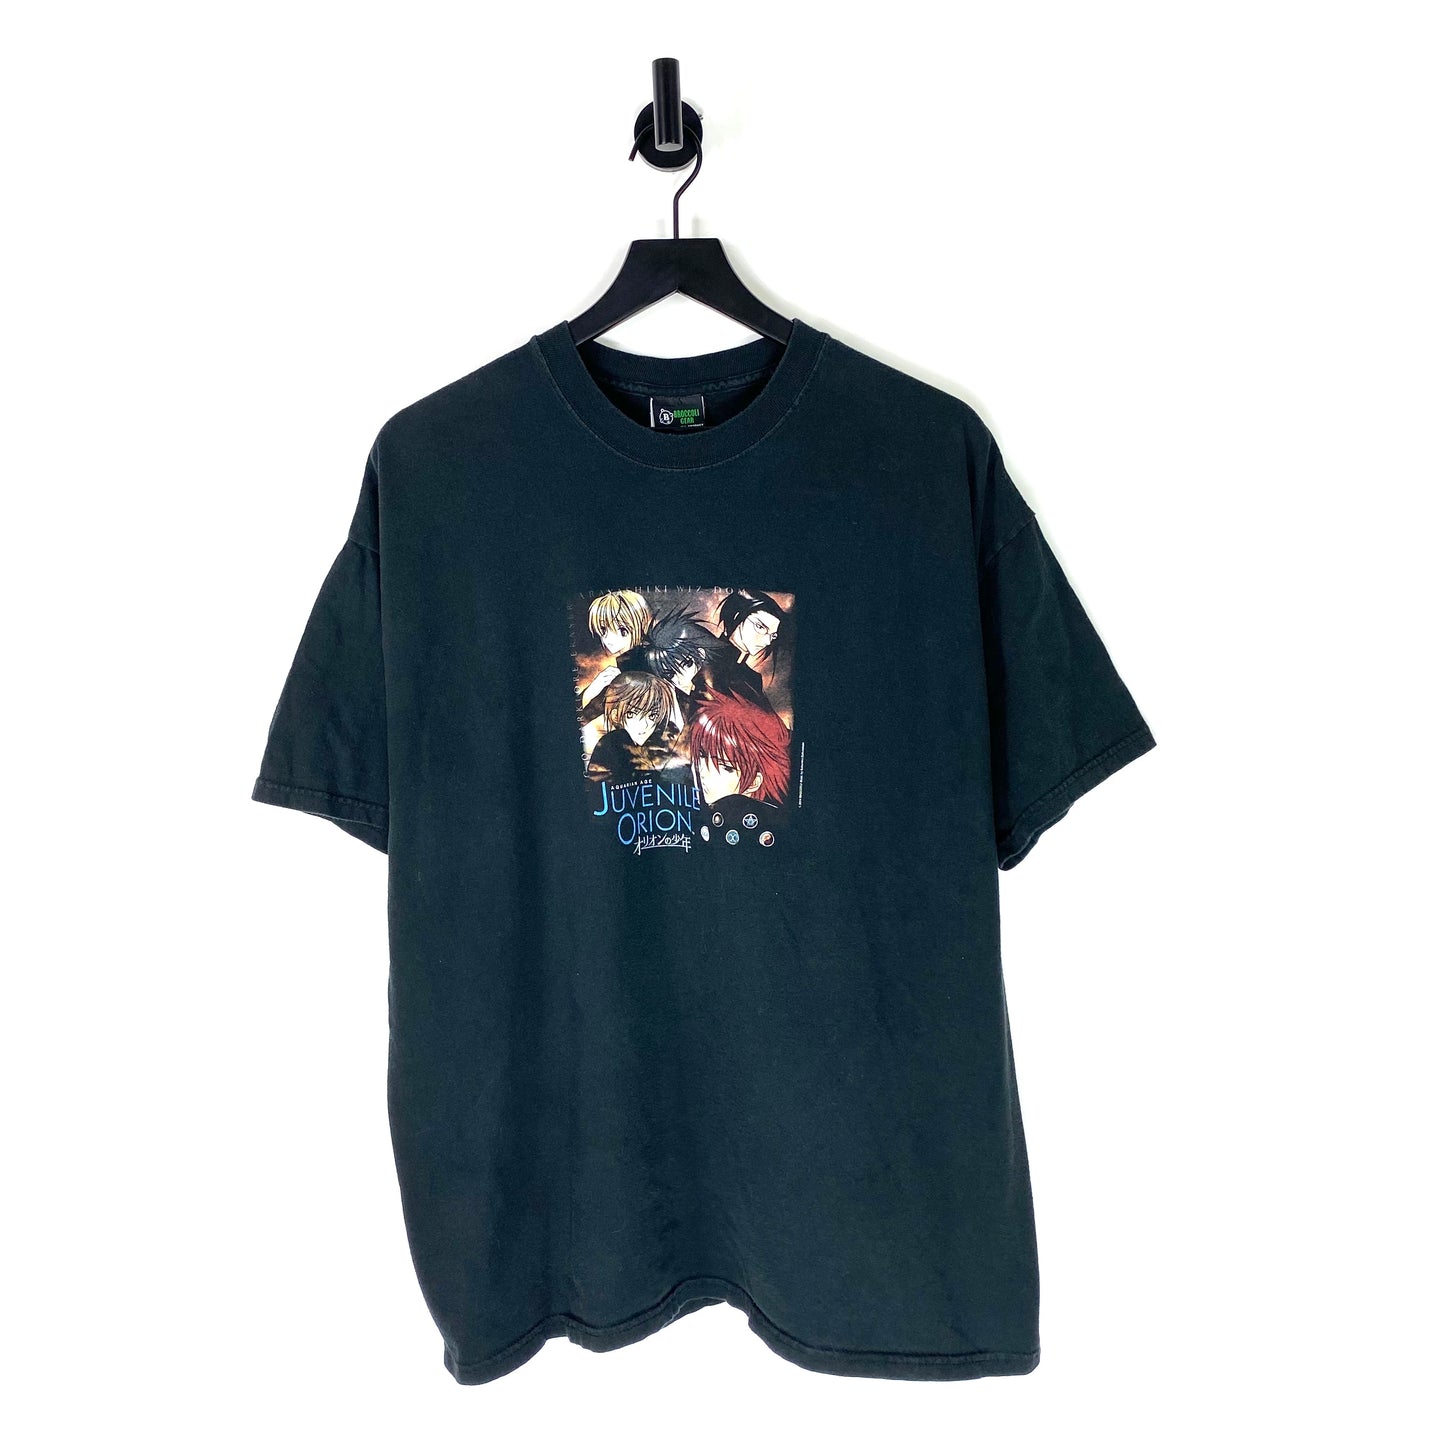 2004 Juvenile Orion T Shirt - XL